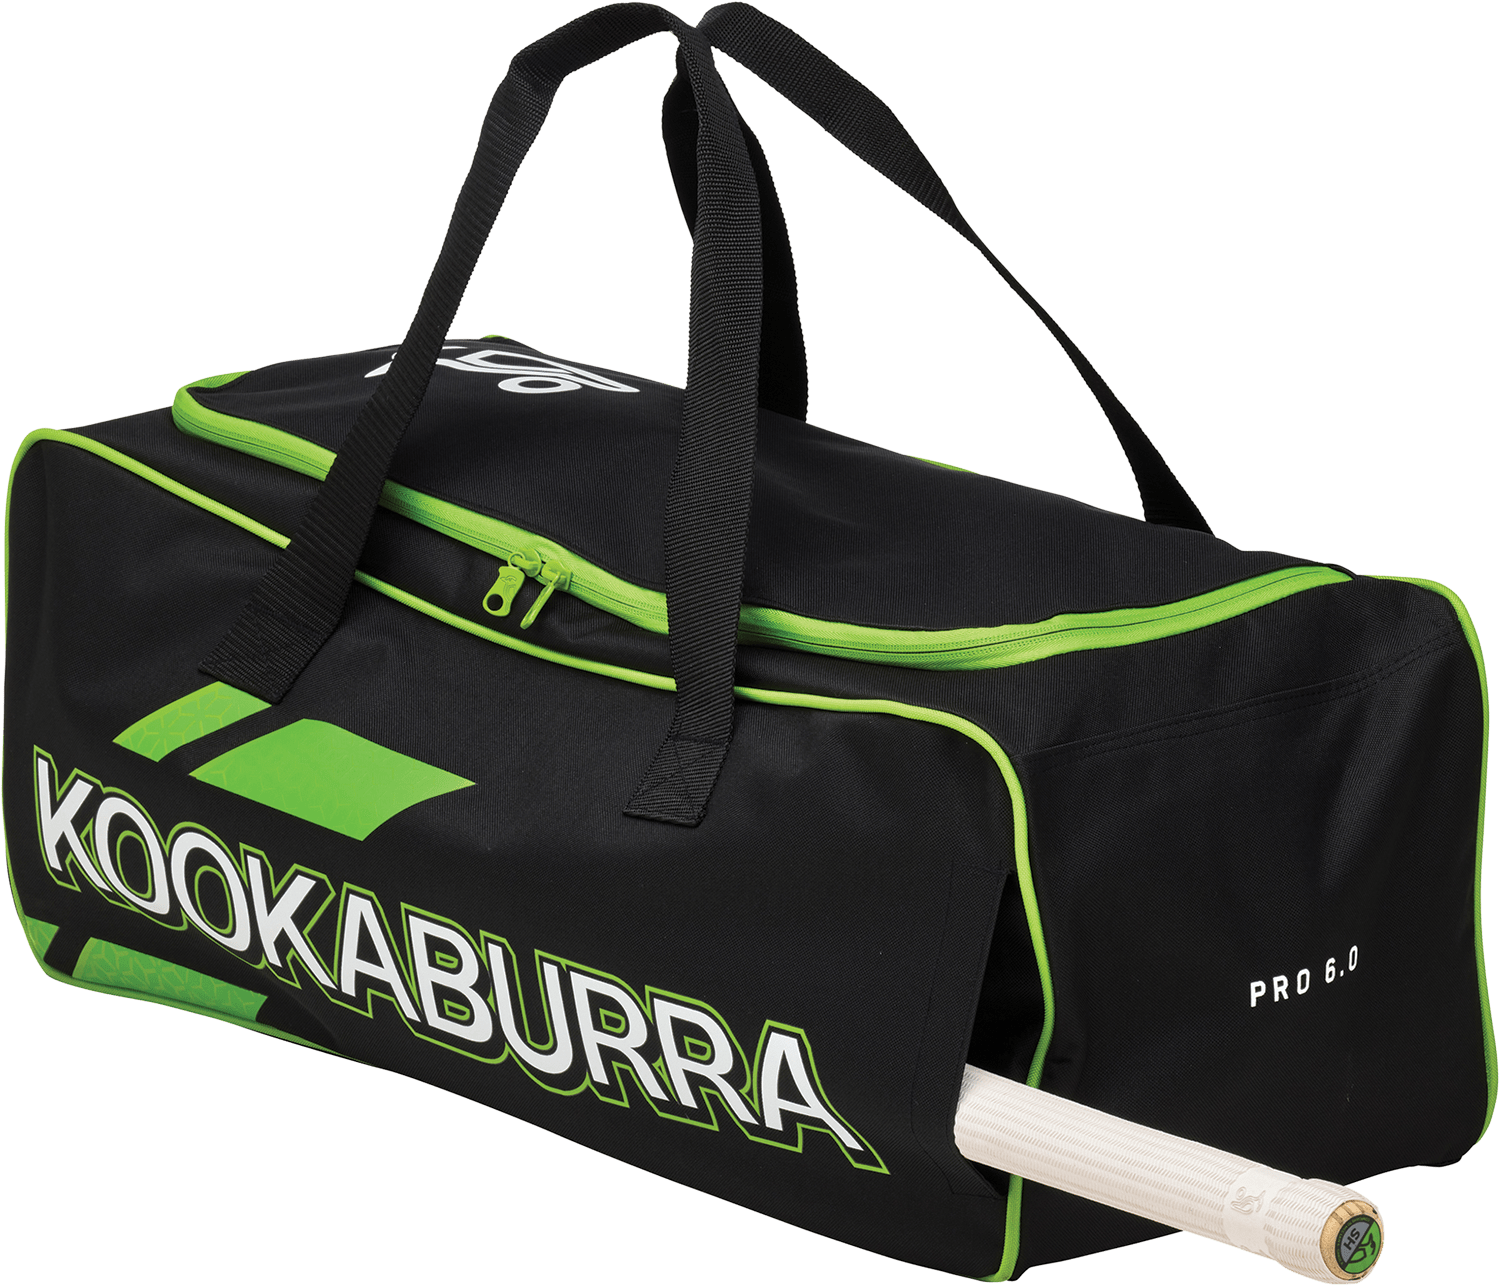 Kookaburra Cricket Bags Kookaburra 6.0 Hold All Cricket Bag